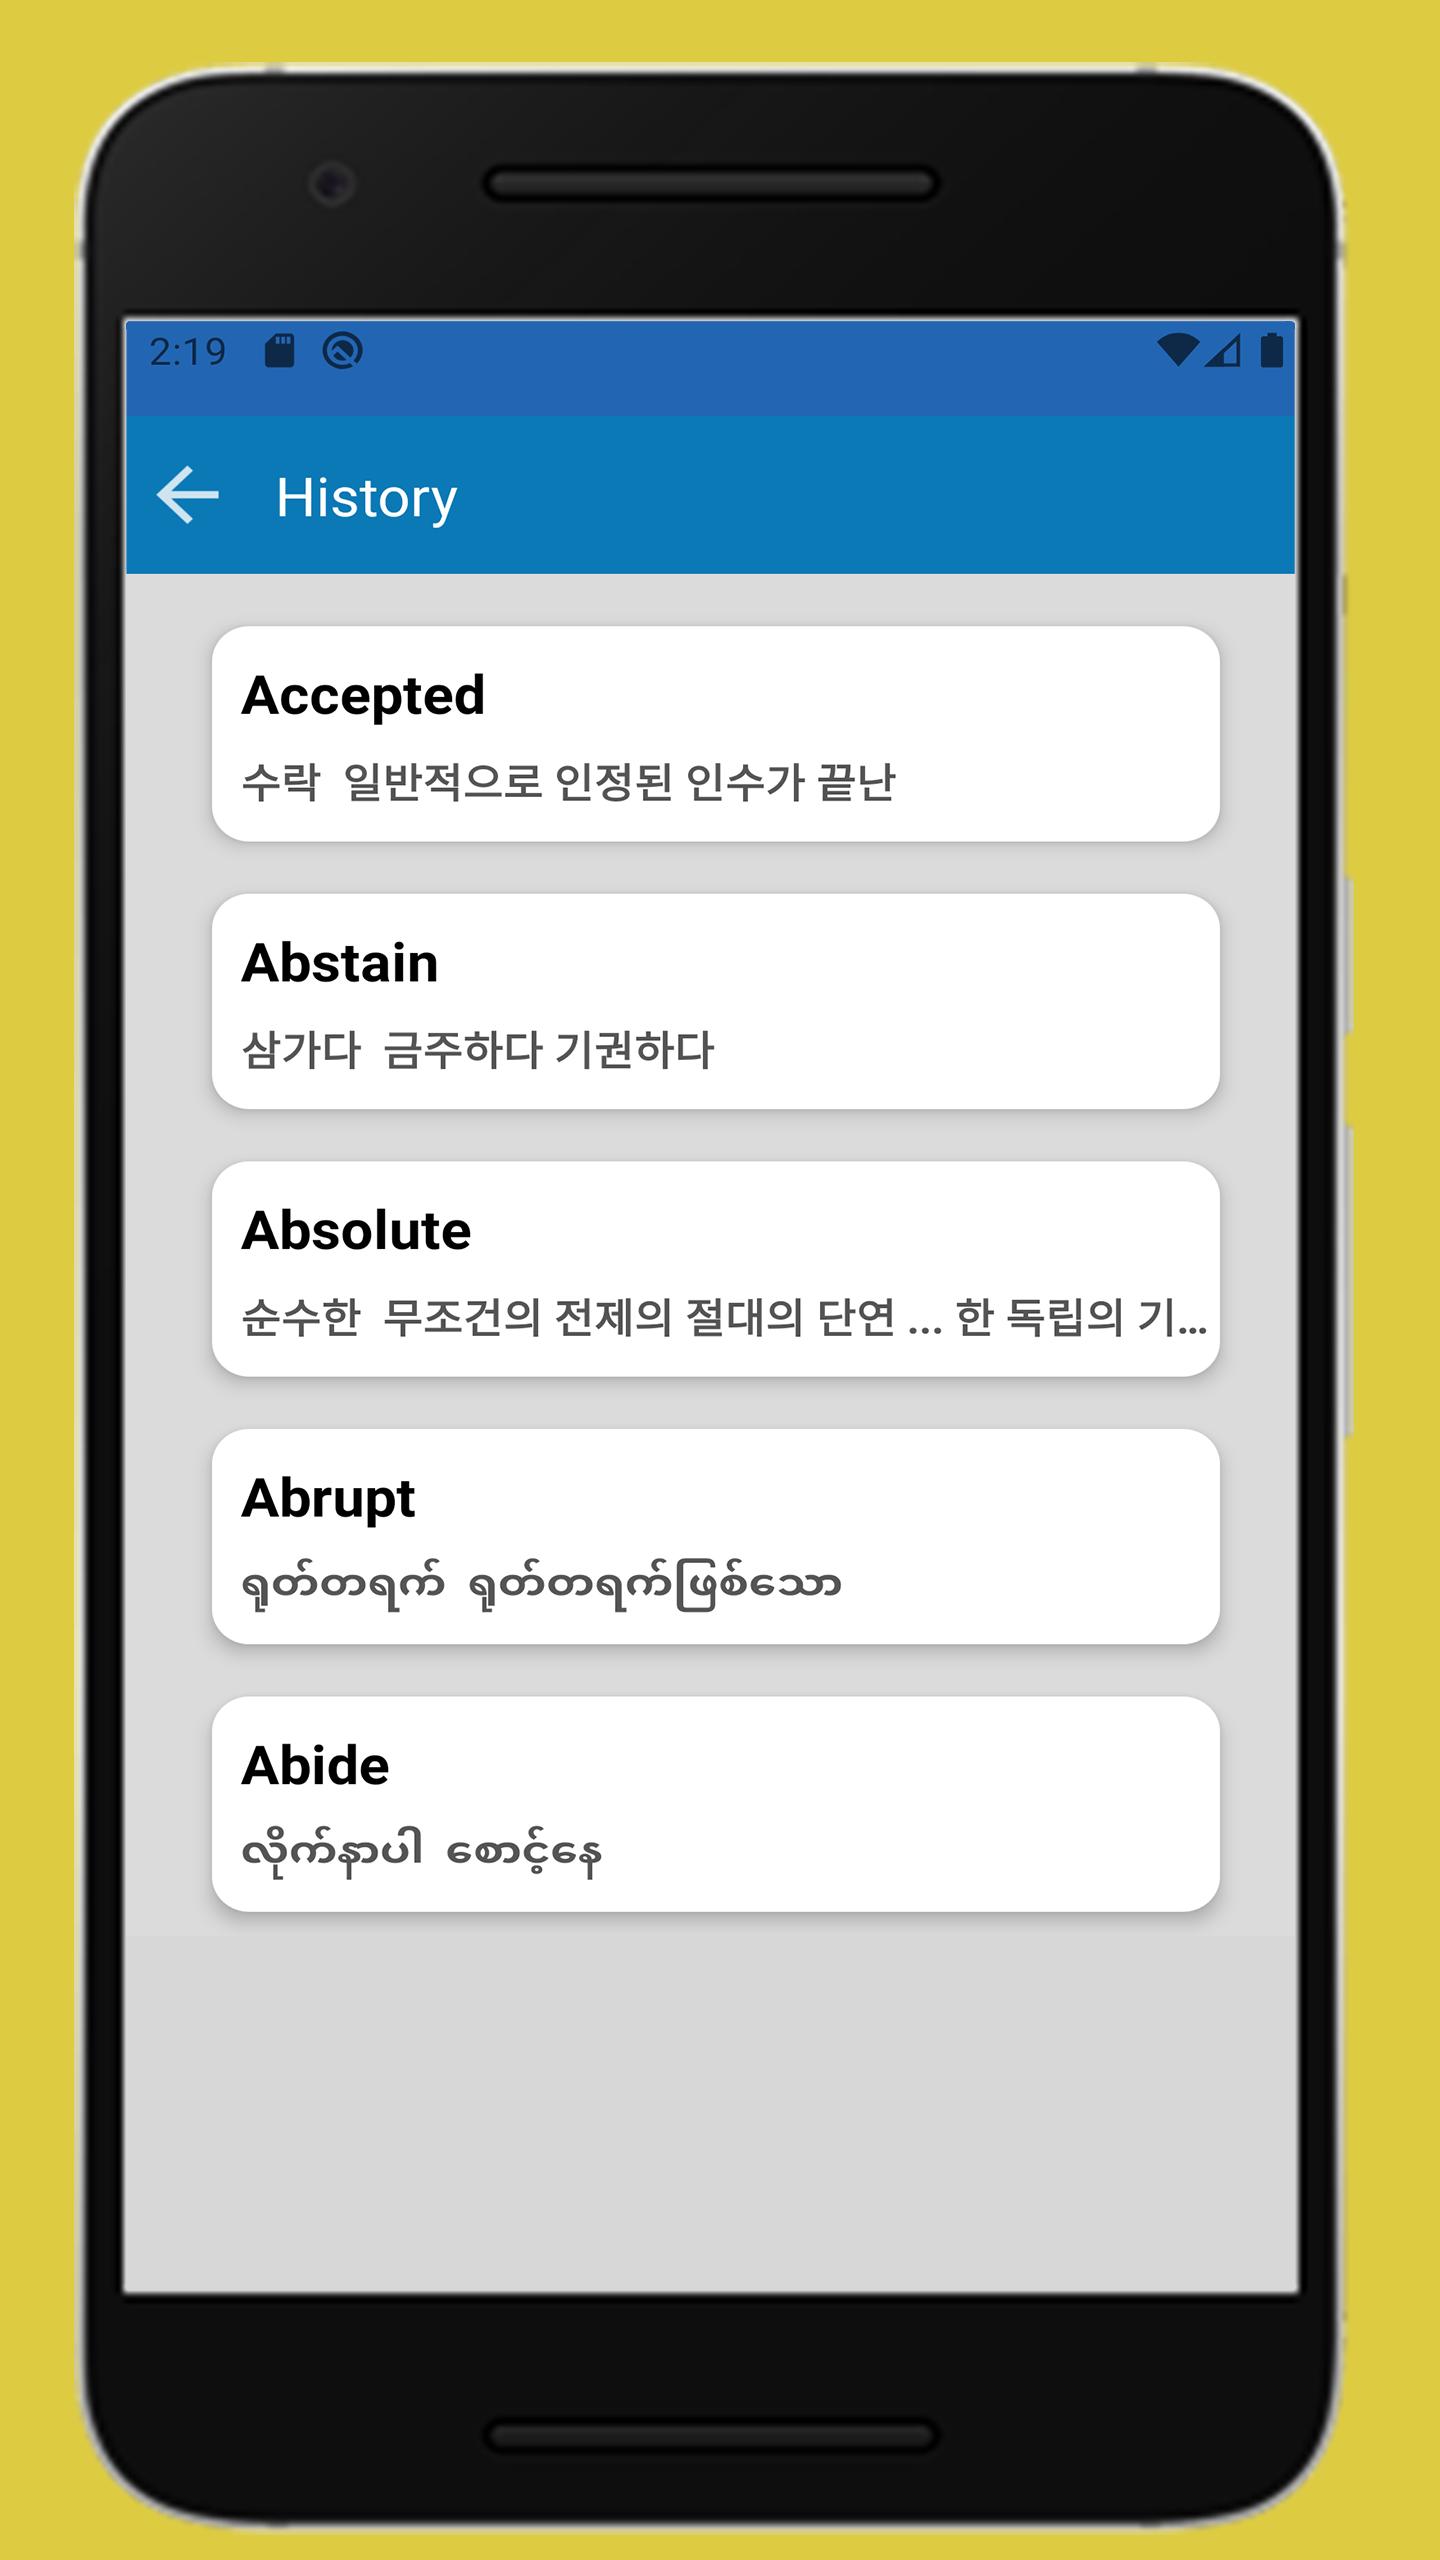 미얀마어 번역기